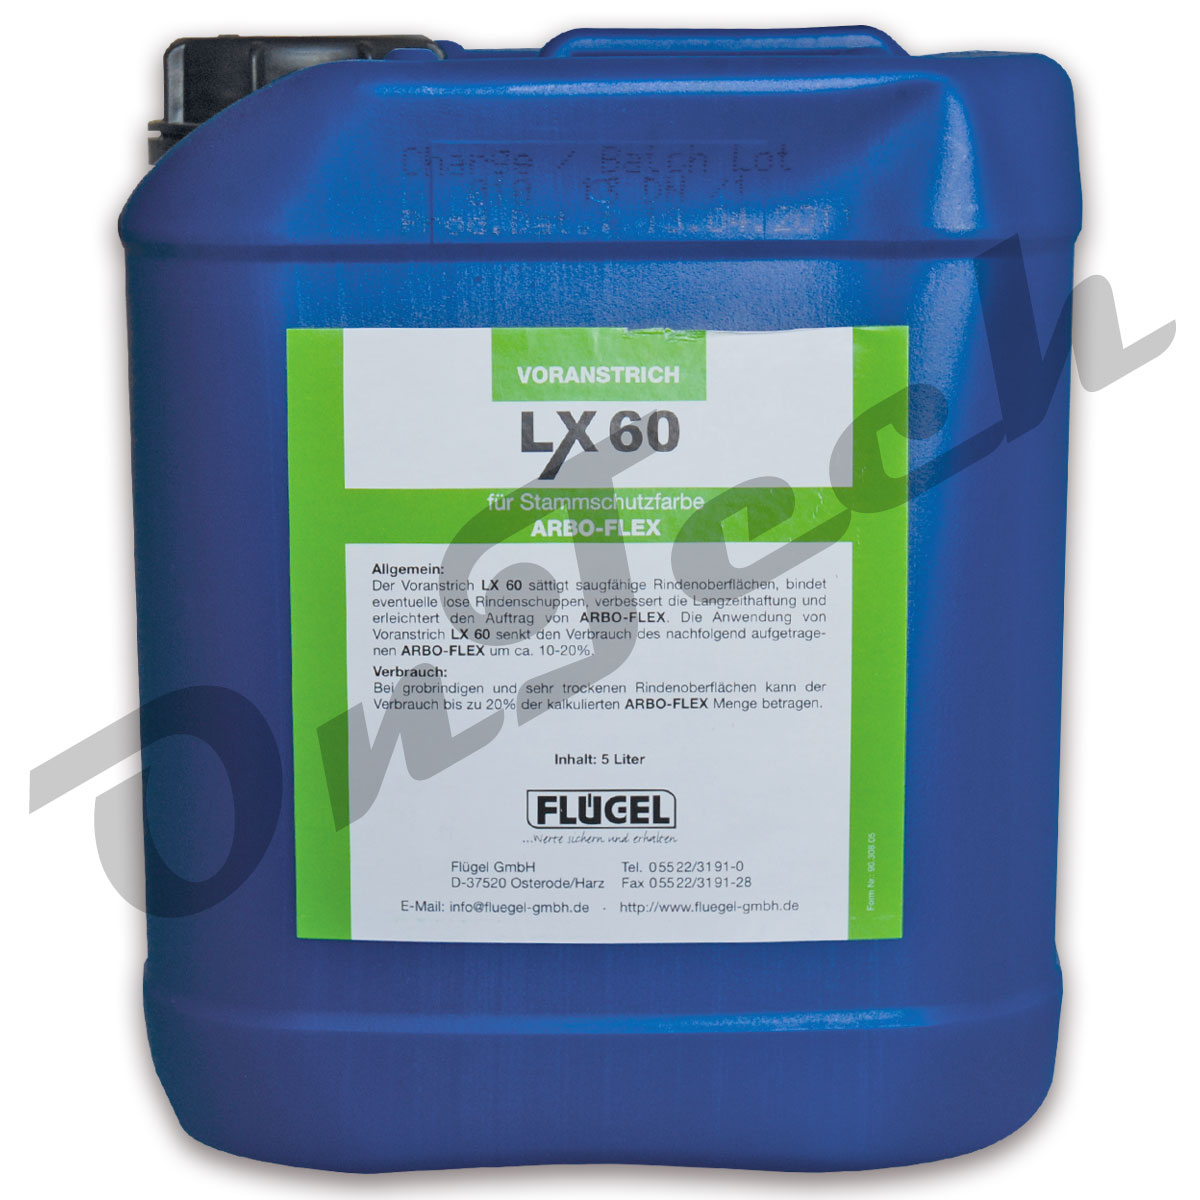 ARBO-FLEX Voranstrich "LX 60" 5 Liter für Stammschutzfarbe ARBO-FLEX